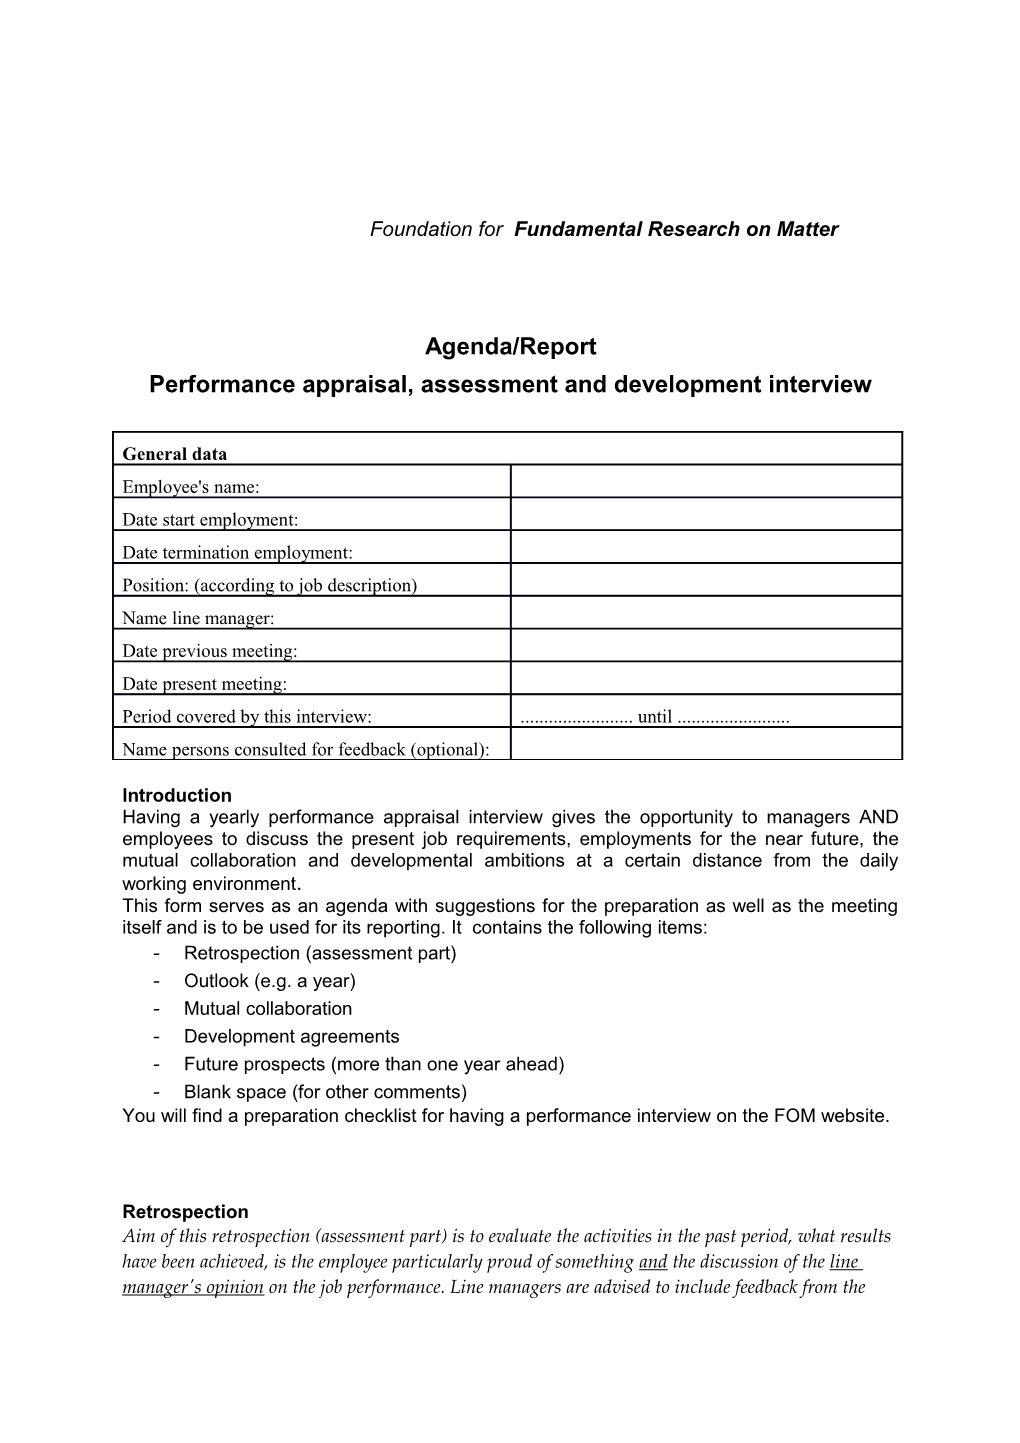 Performance Appraisal, Assessment and Development Interview